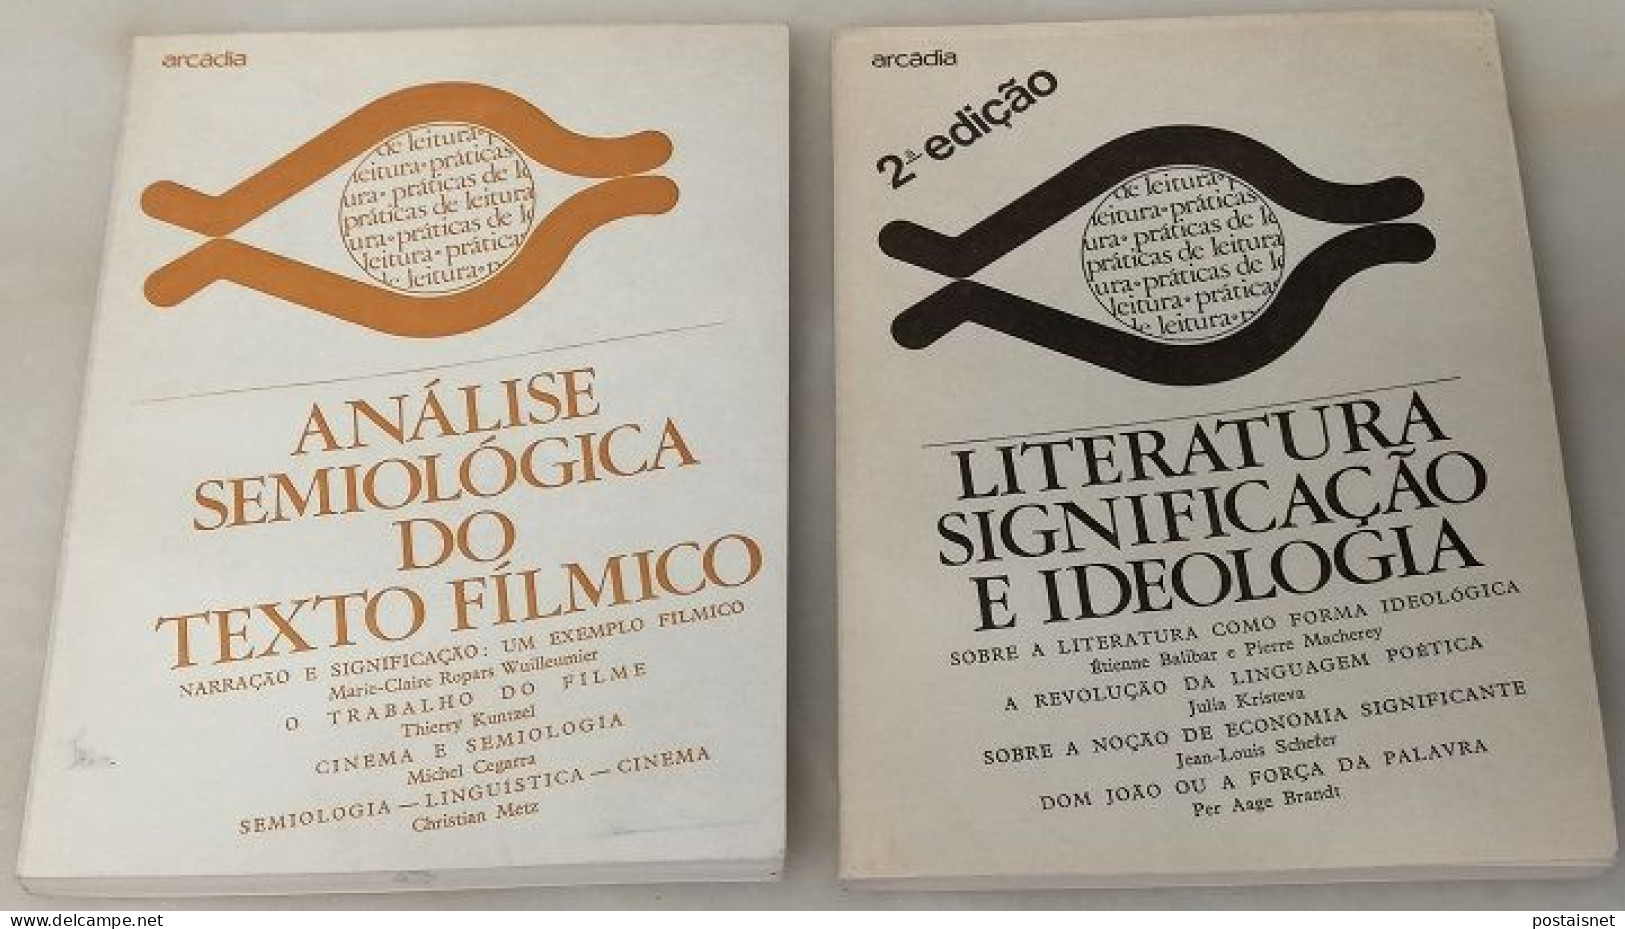 Análise Semiológica Do Texto Fílmico E Literatura Significação E Ideologia - Arcádia - Cultural